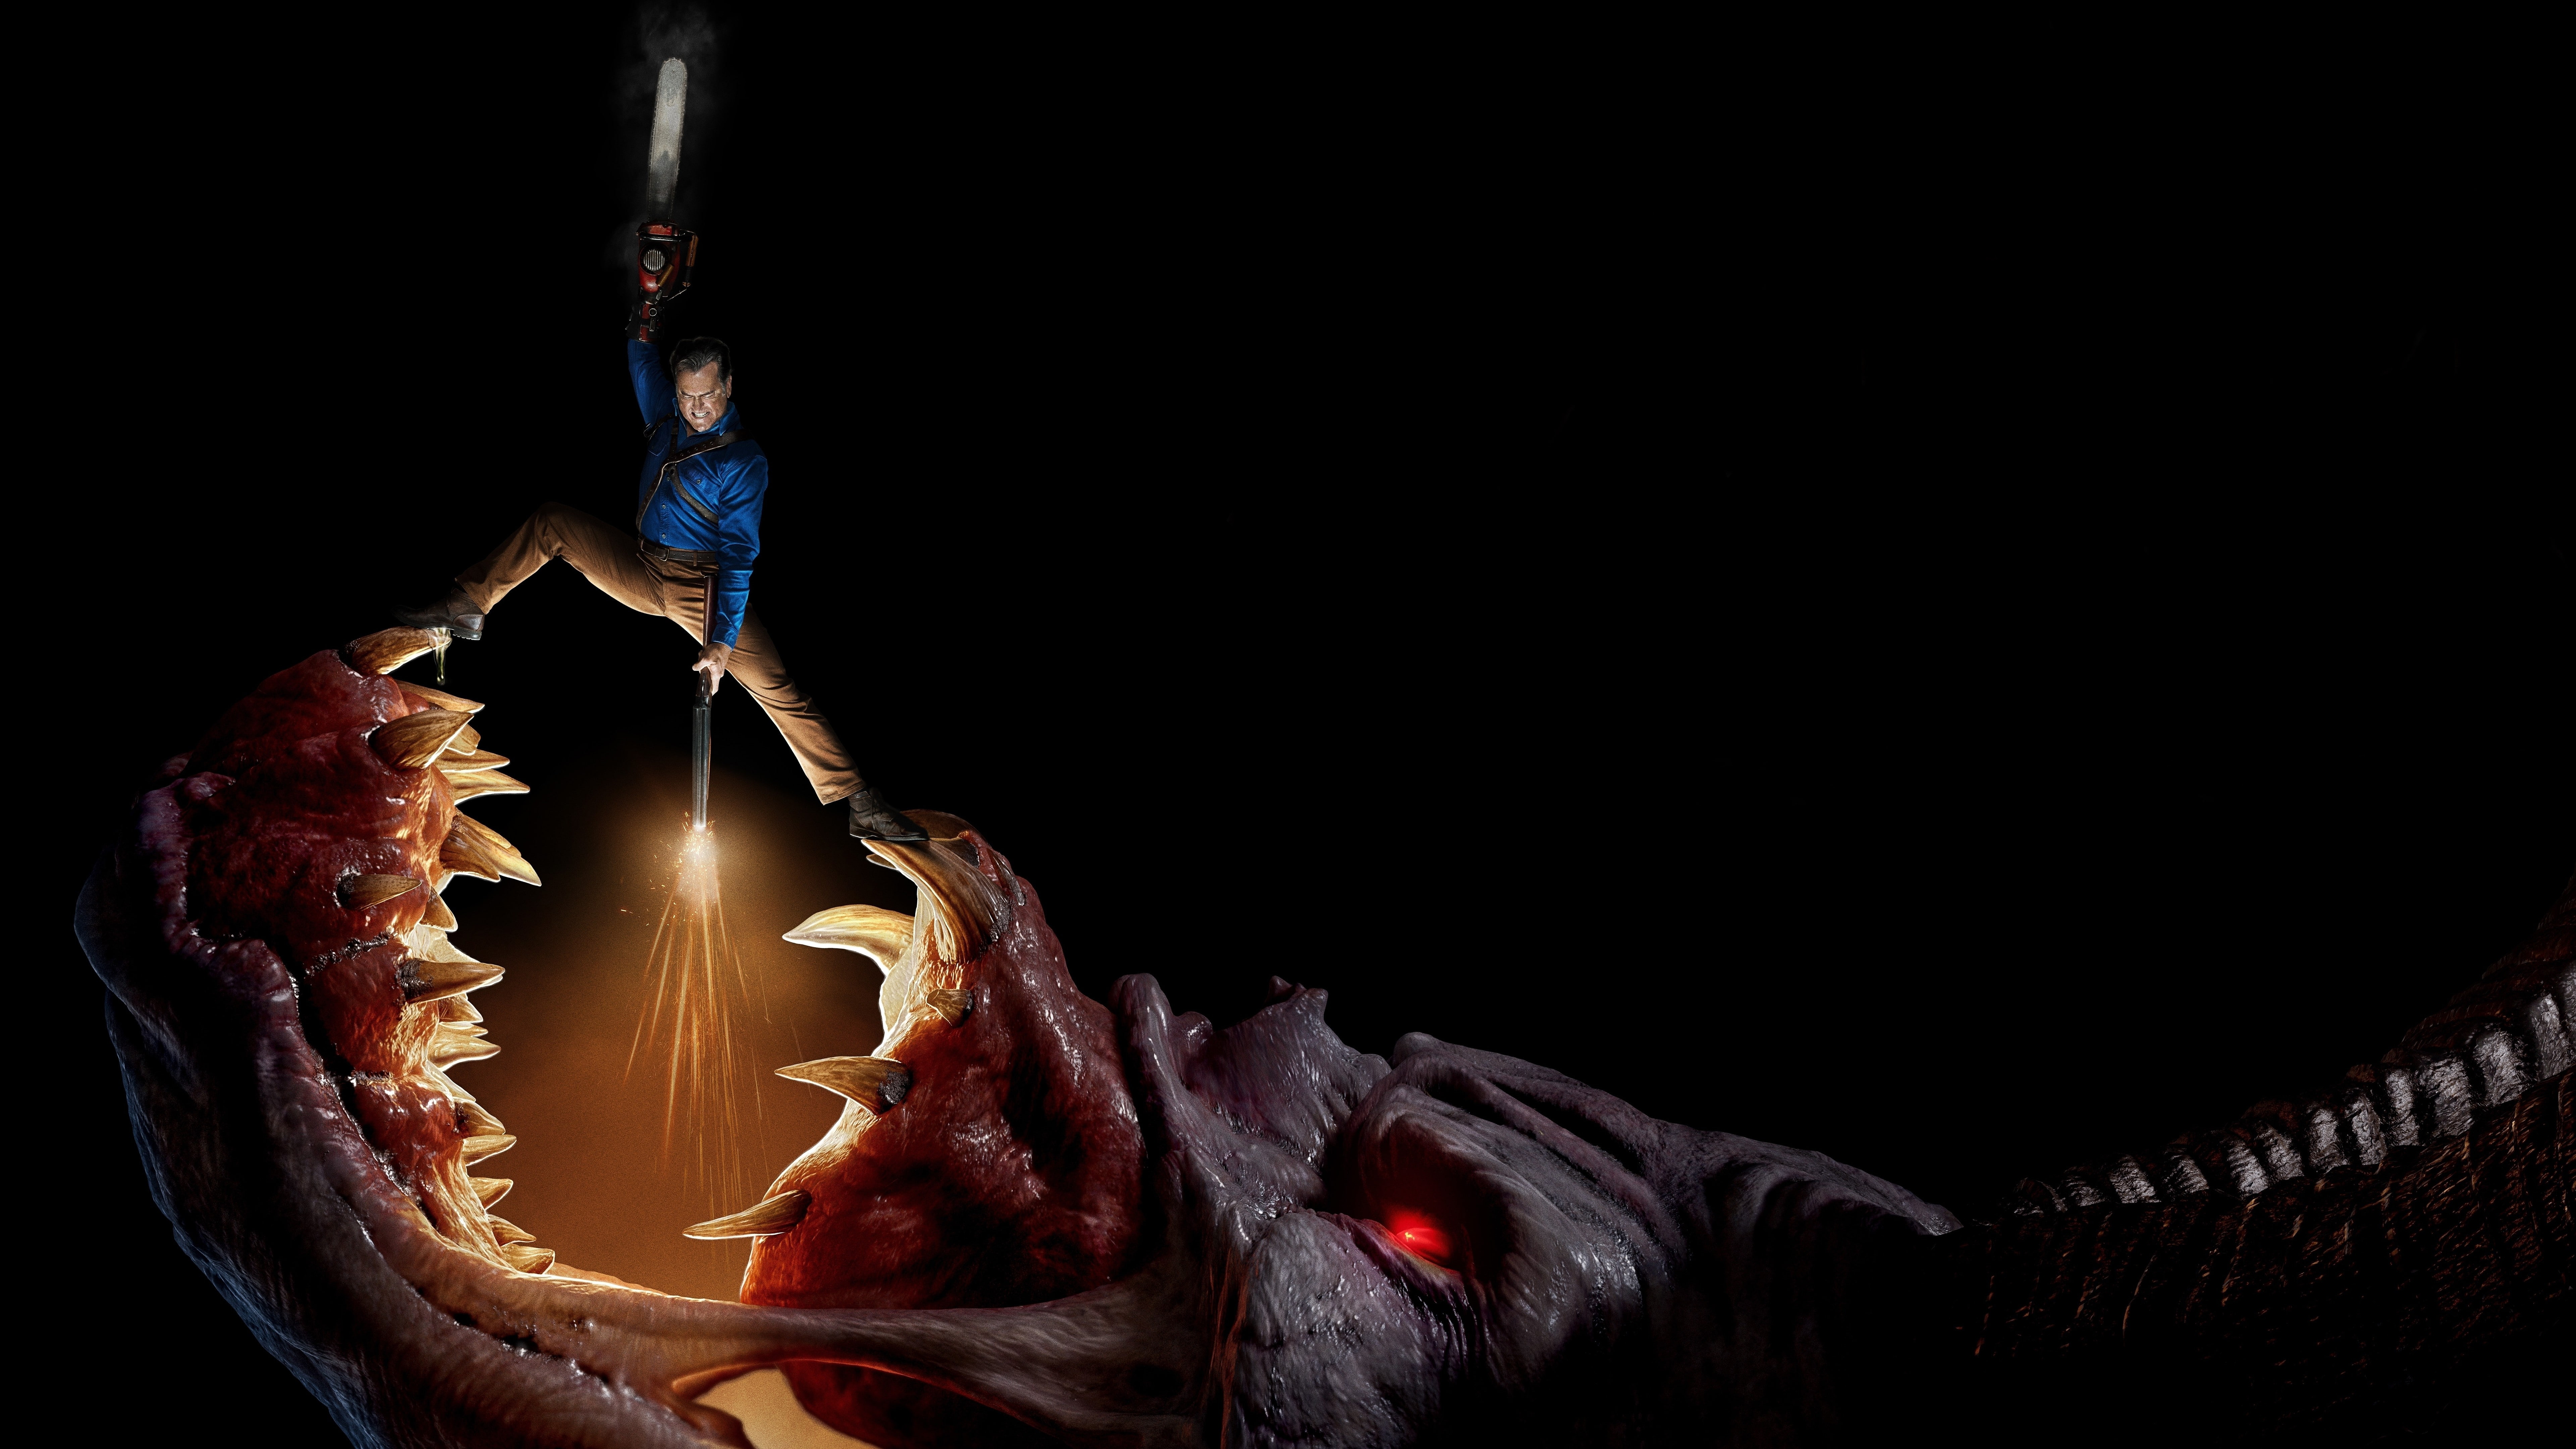 brown monster illustration, Ash vs Evil Dead Season 3, Bruce Campbell